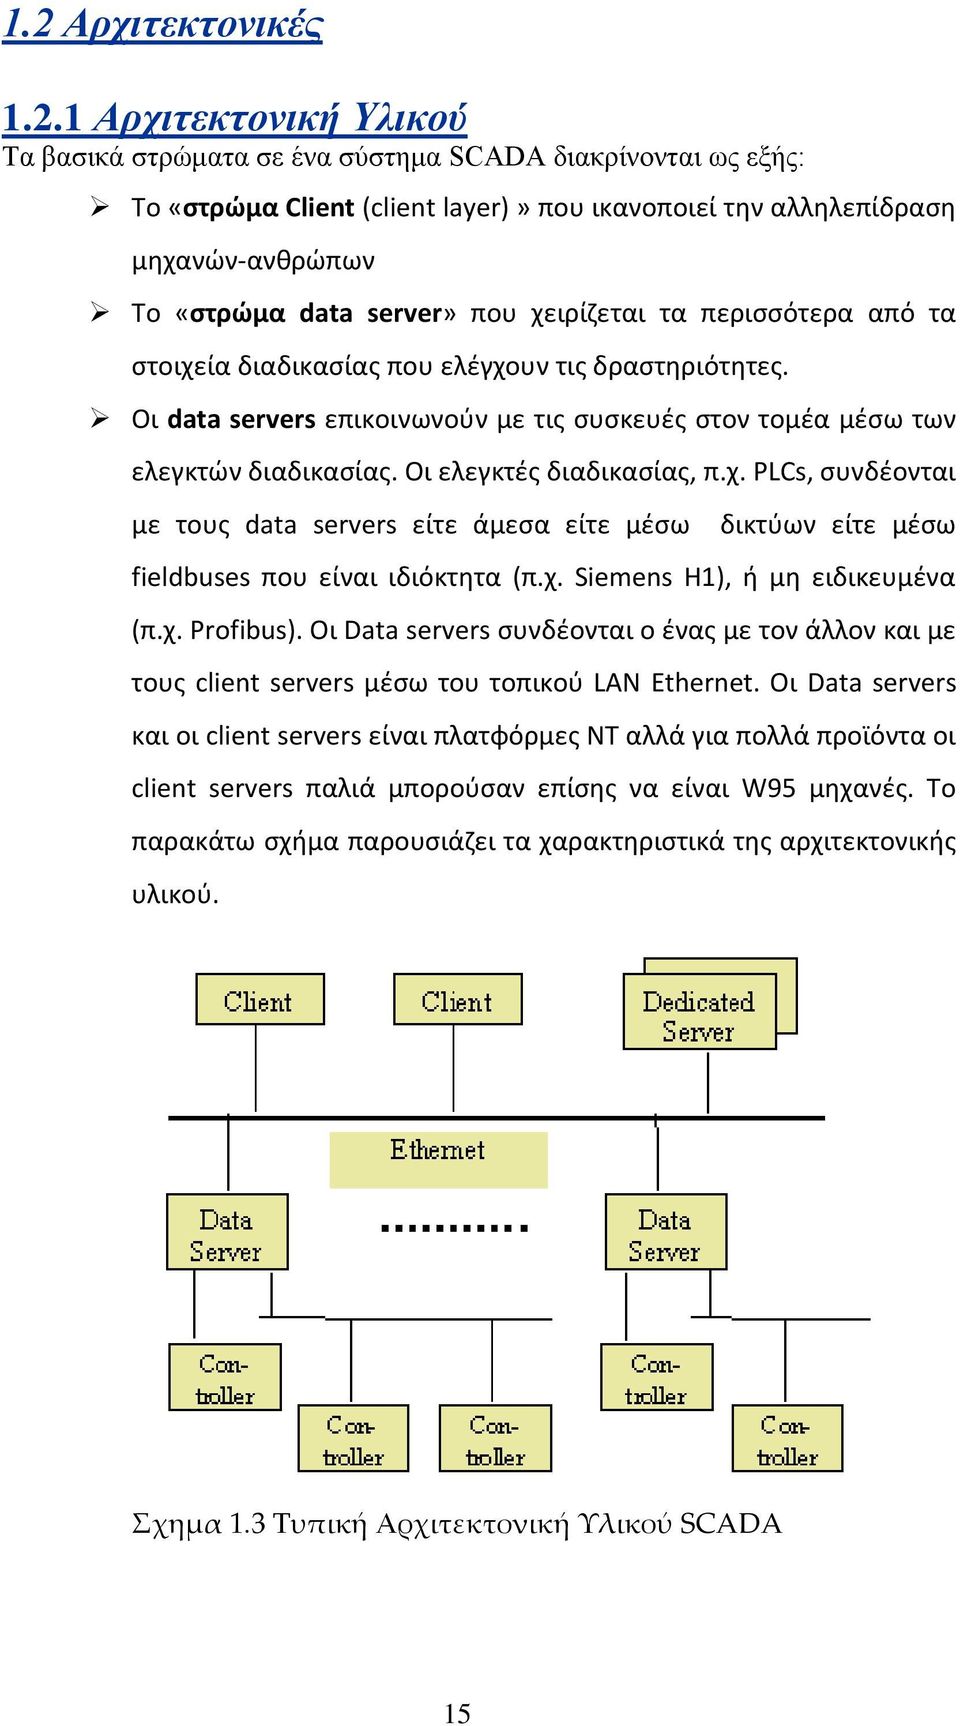 Οι ελεγκτές διαδικασίας, π.χ. PLCs, συνδέονται με τους data servers είτε άμεσα είτε μέσω δικτύων είτε μέσω fieldbuses που είναι ιδιόκτητα (π.χ. Siemens H1), ή μη ειδικευμένα (π.χ. Profibus).